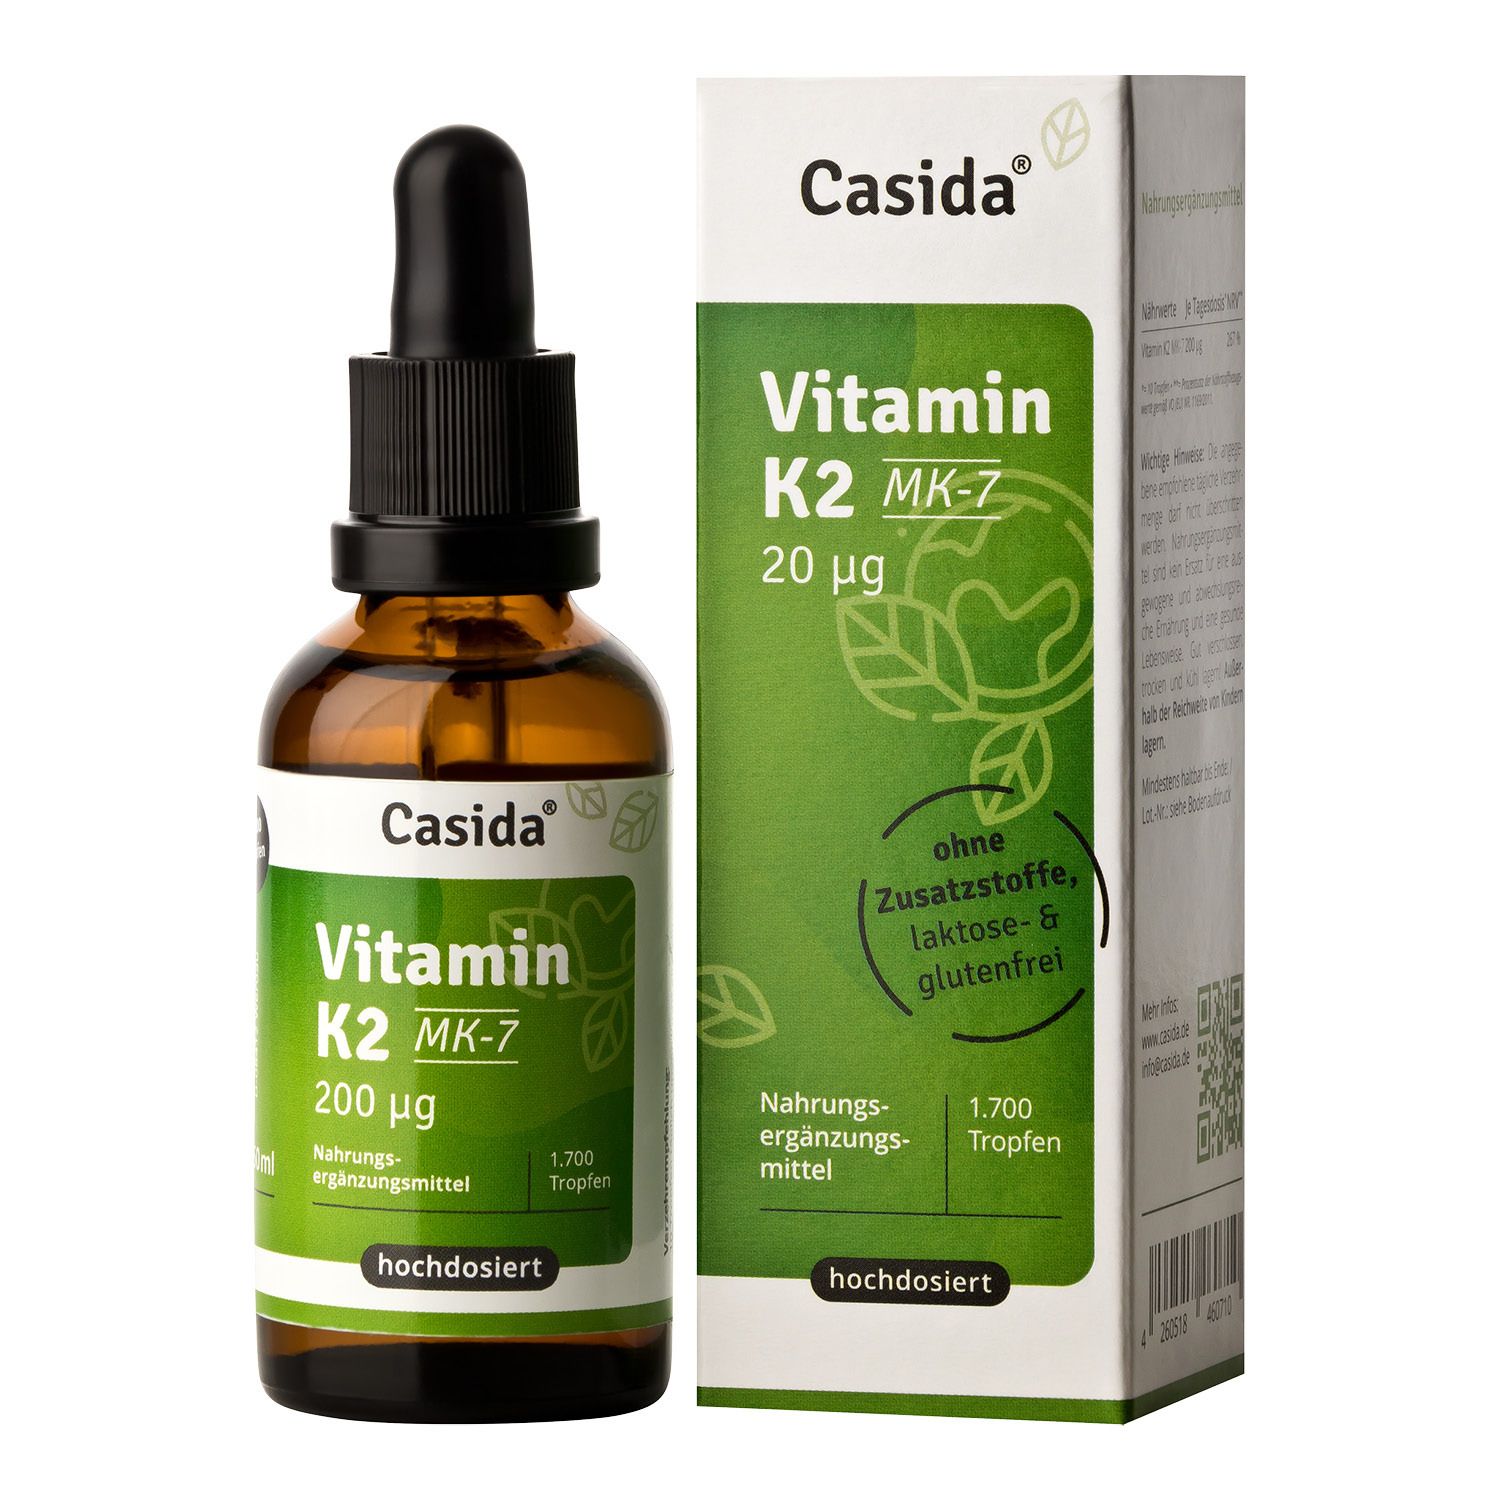 Casida® Vitamin K2 Mk-7 vegan